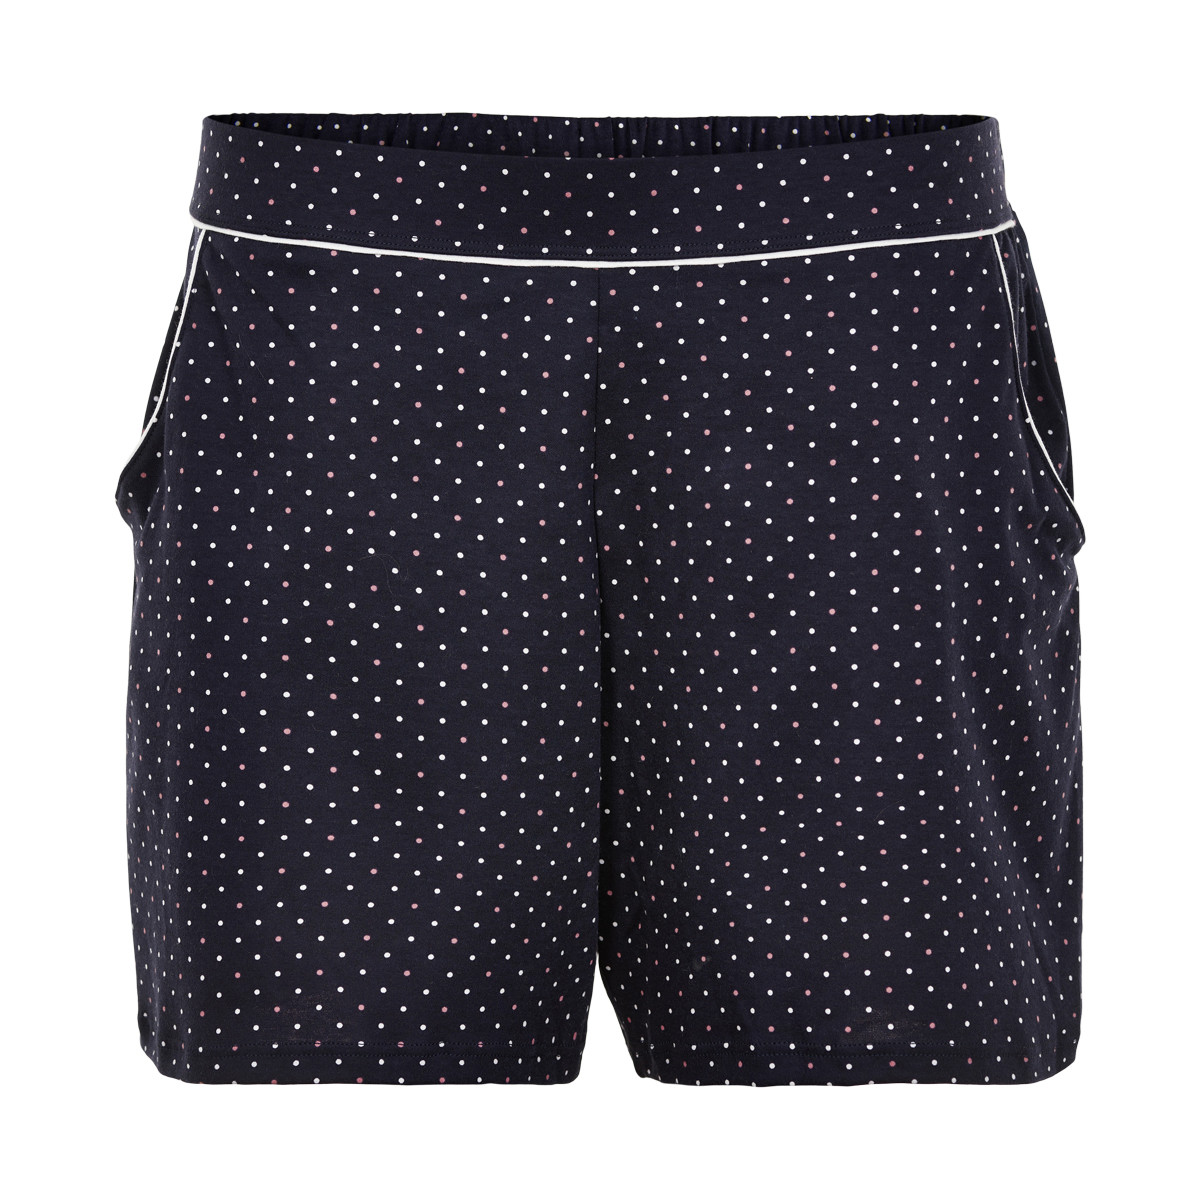 #2 - Calida Shorts, Farve: Sort, Størrelse: M, Dame